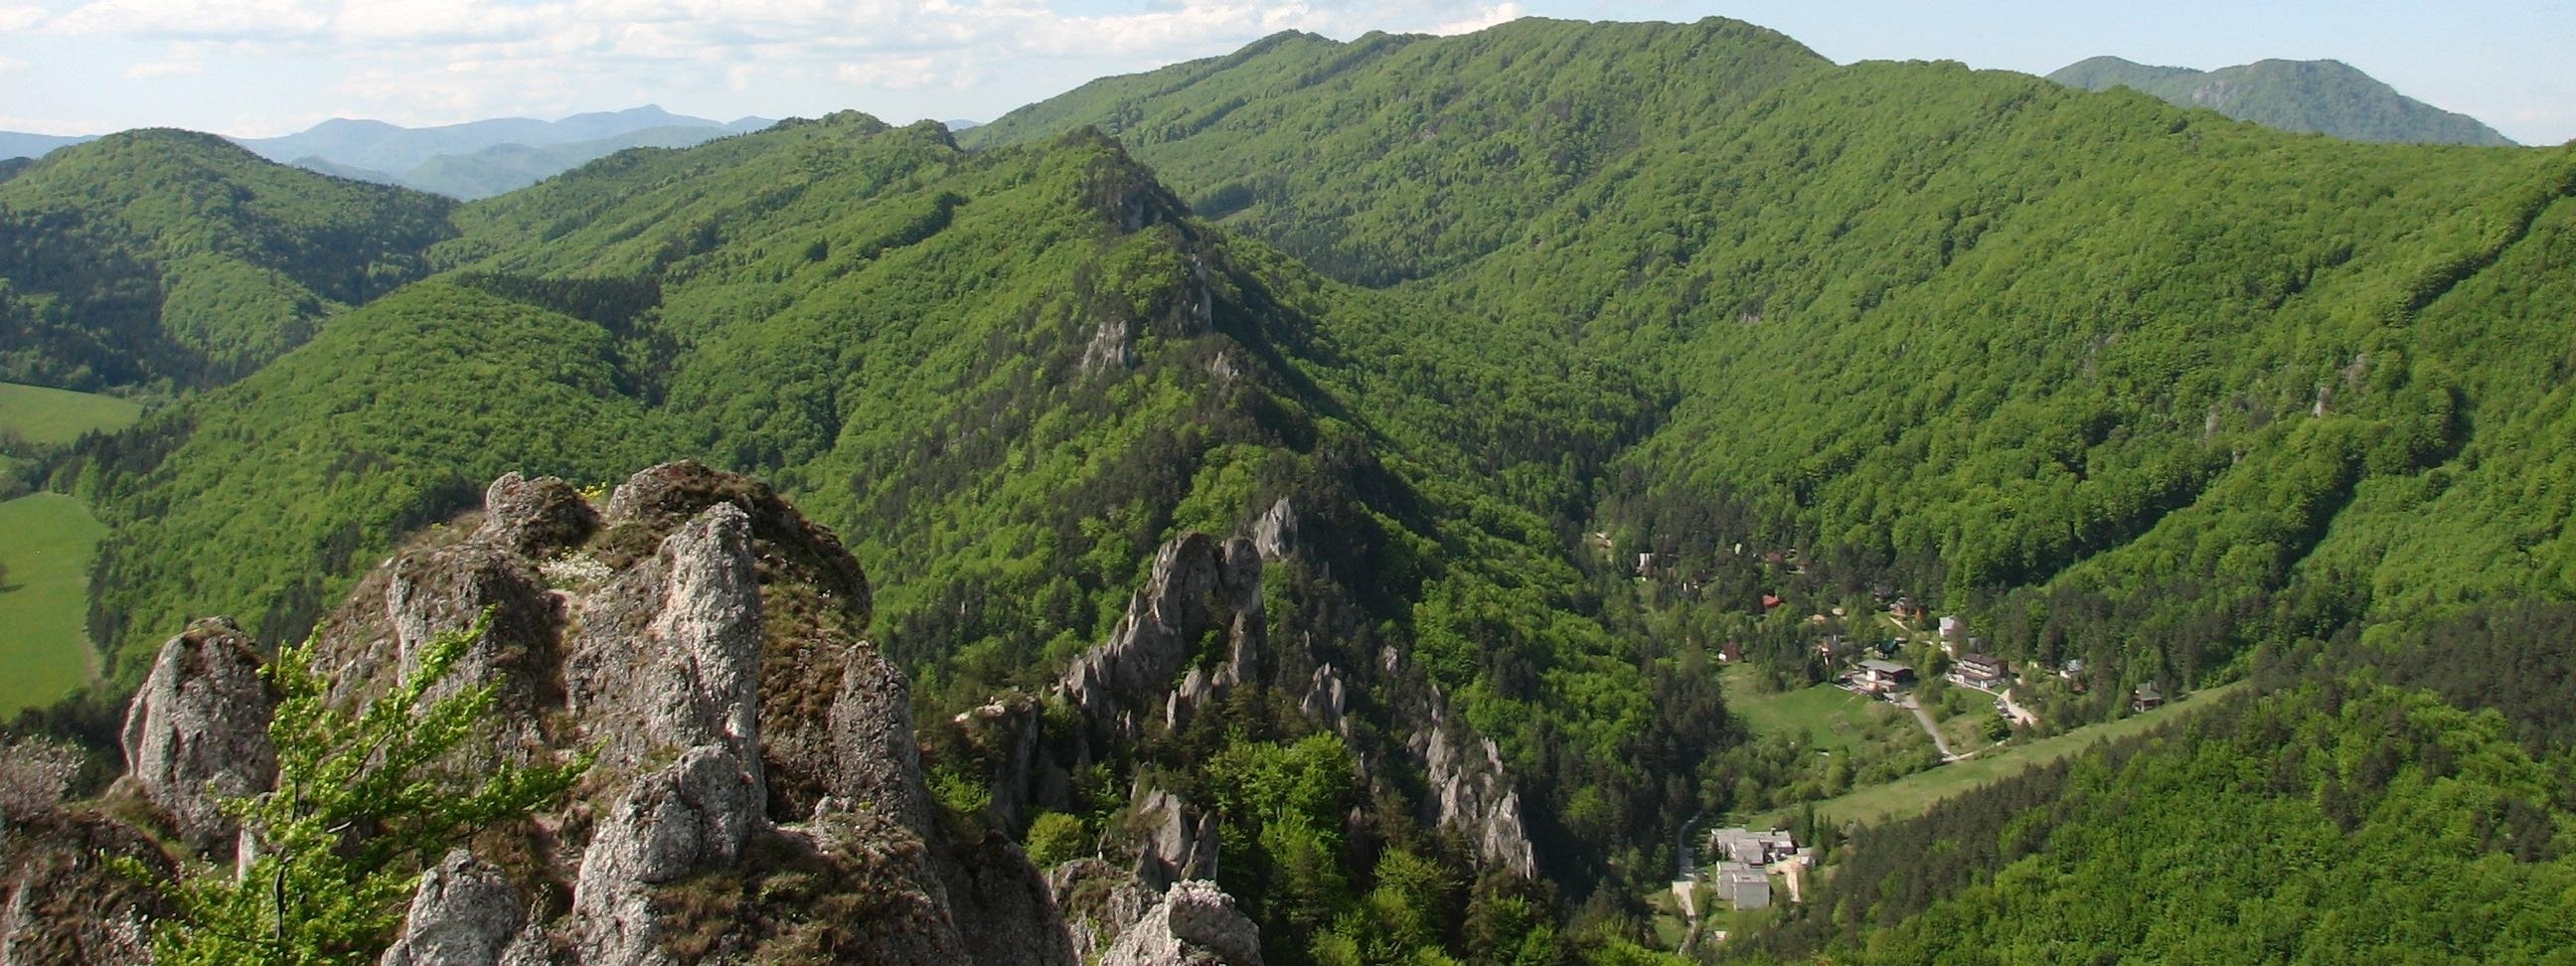 Súľov hills (Súľovské vrchy) - Slovakia